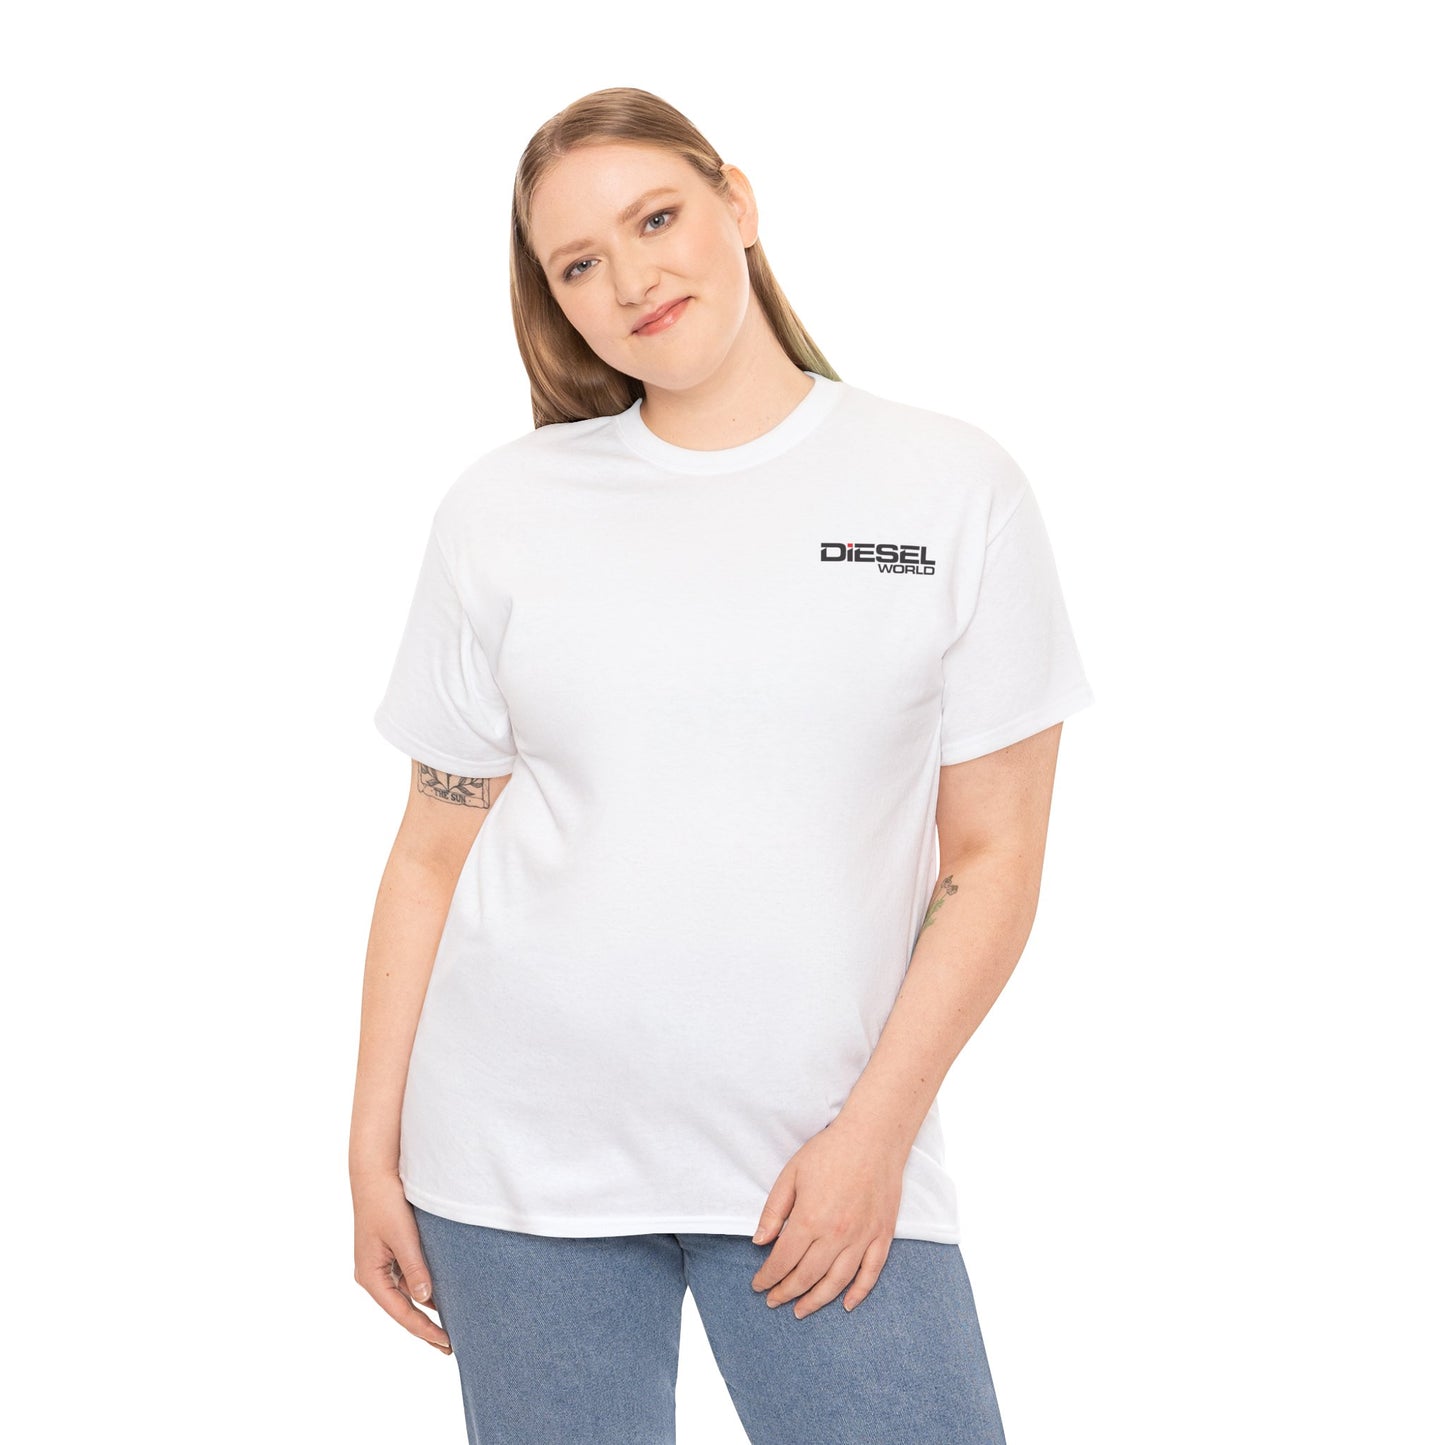 Diesel World Magazine T-Shirt - Unisex Heavy Cotton Tee